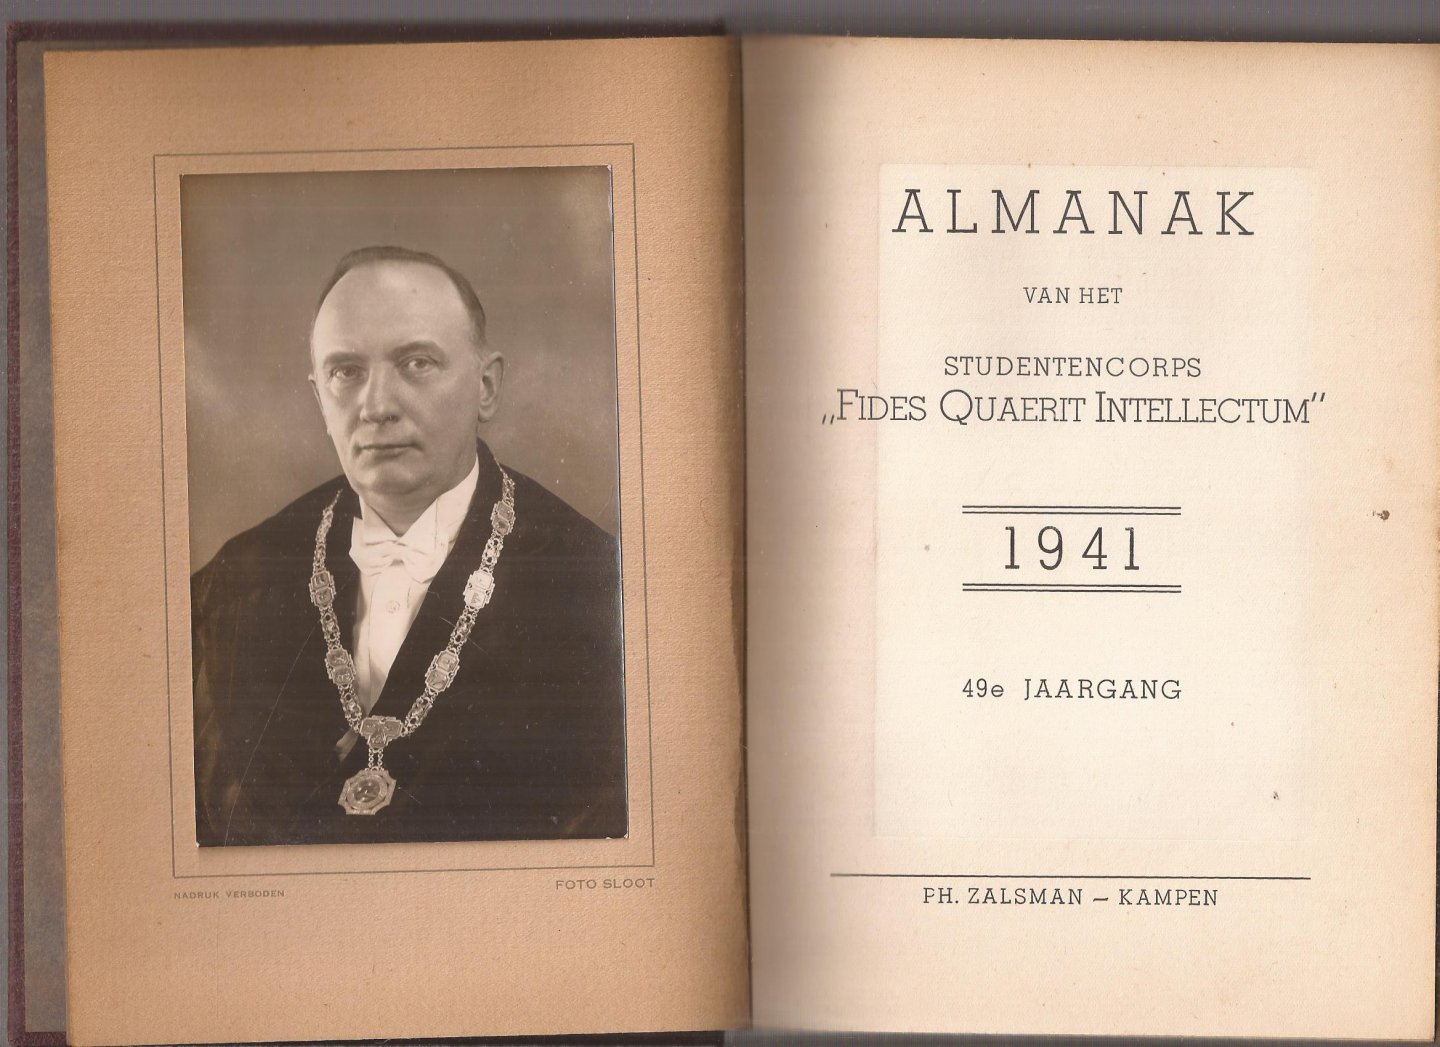  - Almanak van het studentencorps "Fides Quærit Intellectum" voor het jaar 1941. 49e Jaargang.